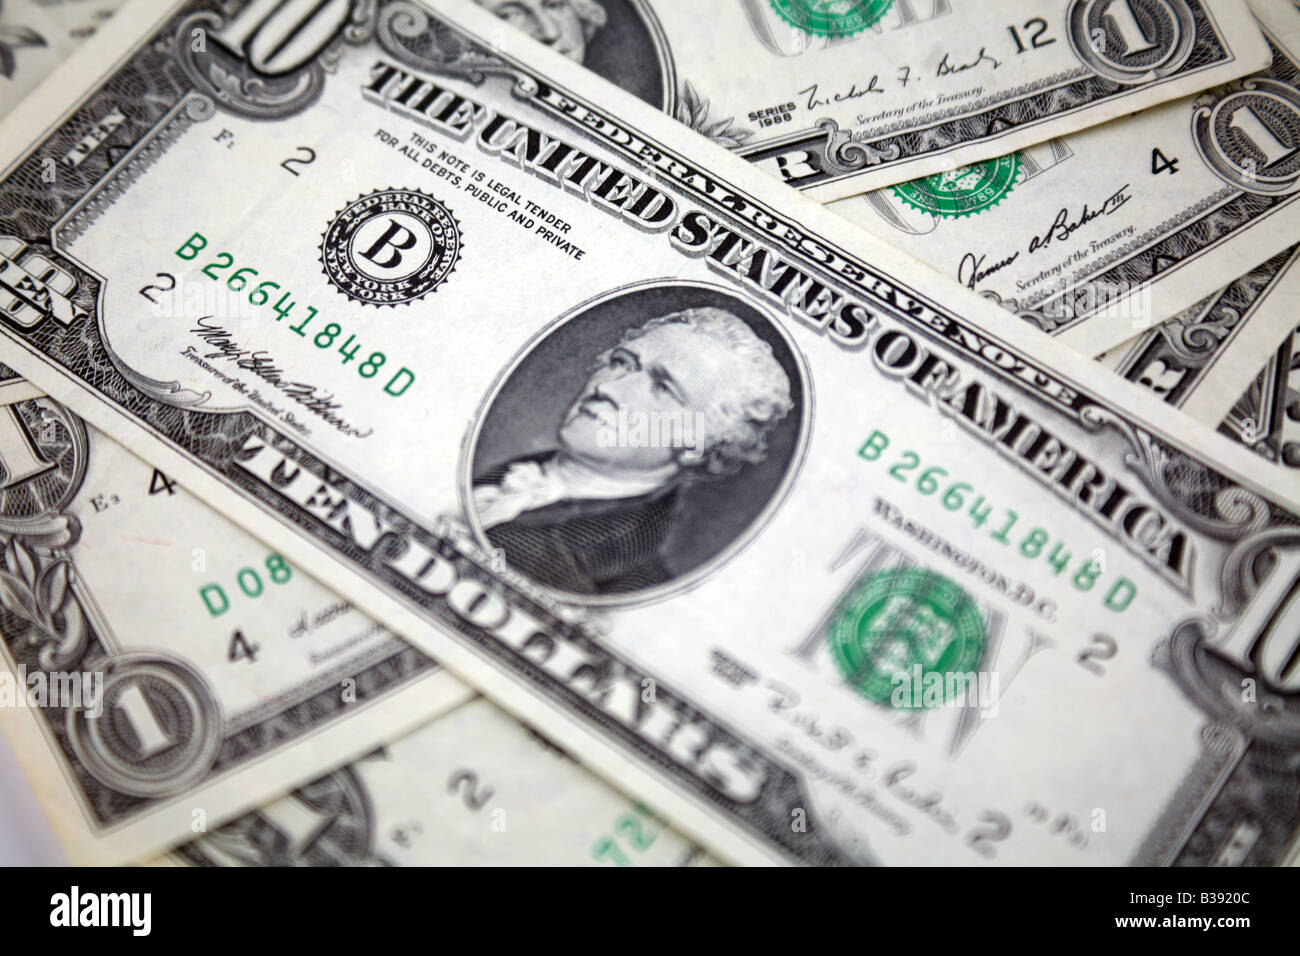 Grün zurück Geldschein Dollar aus Vereinigte Staaten von Amerika Stockfoto